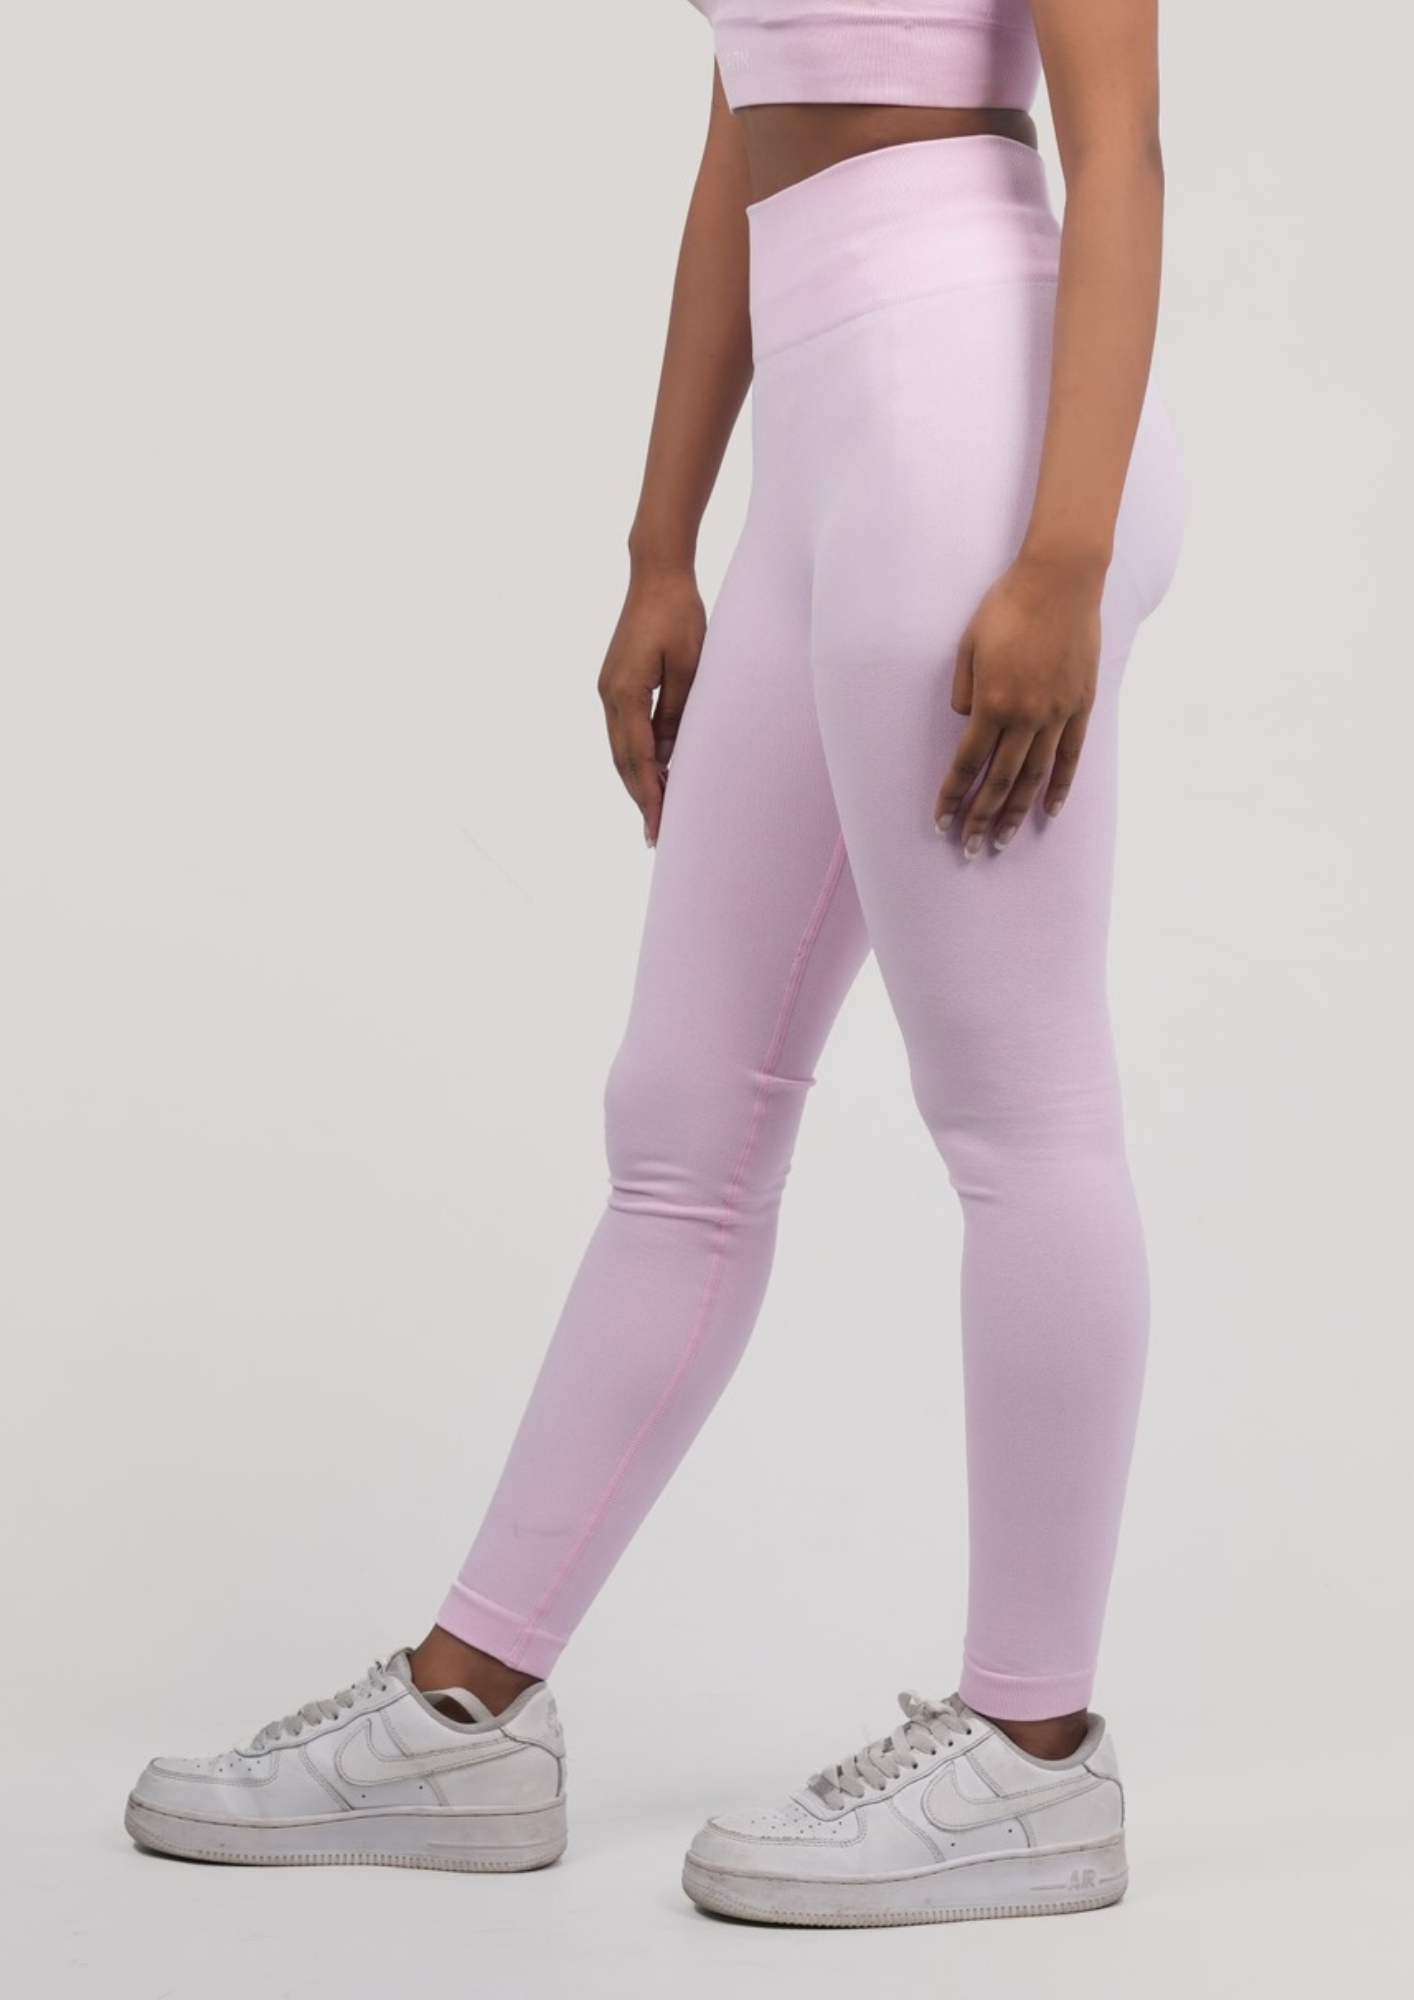 Pastel pink leggings